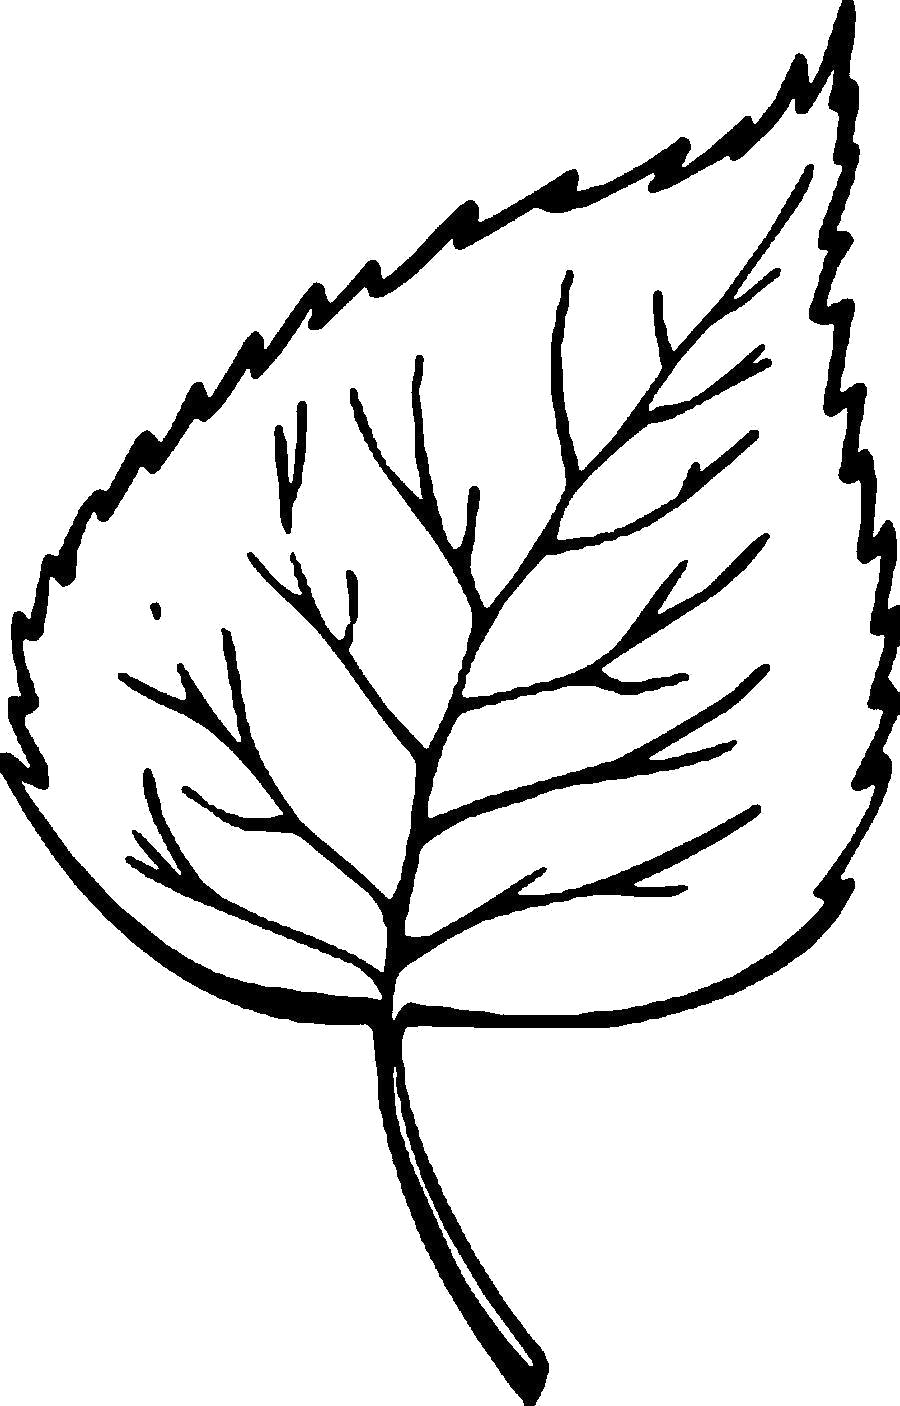 Название: Раскраска Раскраски Листья деревьев шаблон листа березы. Категория: Контуры листьев. Теги: Контуры разных листьев для вырезания.